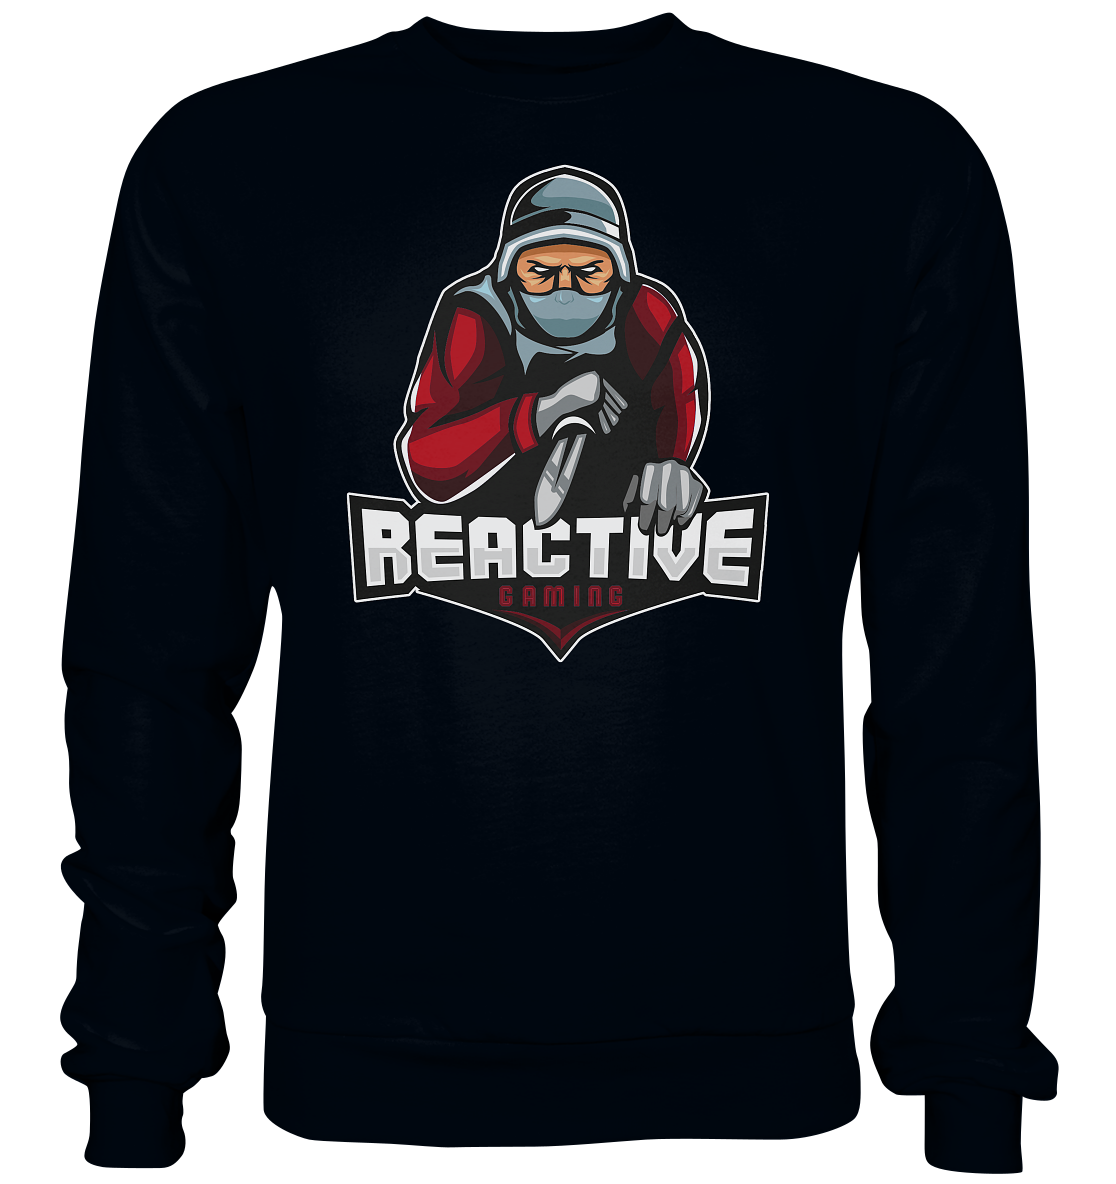 REACTIVE GAMING - Basic Sweatshirt